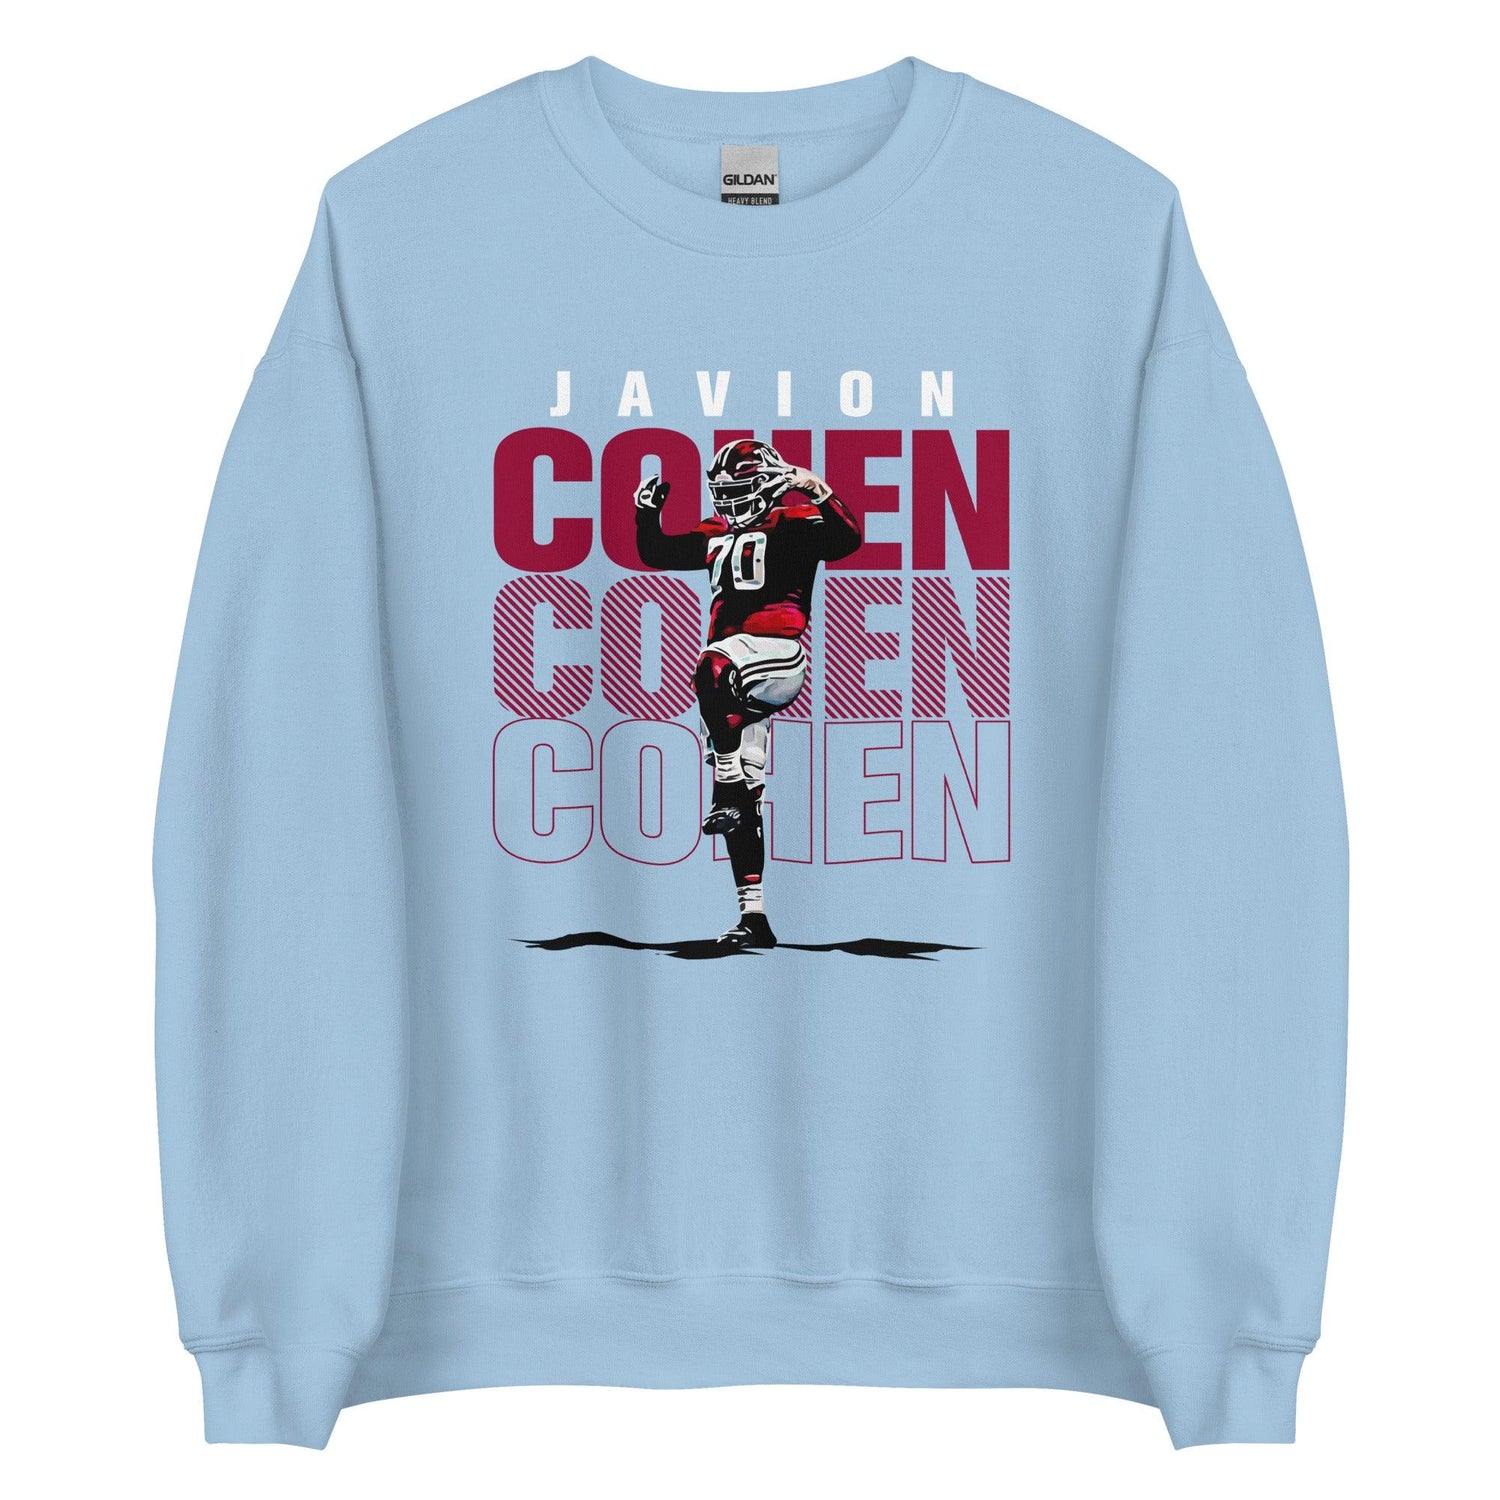 Javion Cohen "Celebrate" Sweatshirt - Fan Arch